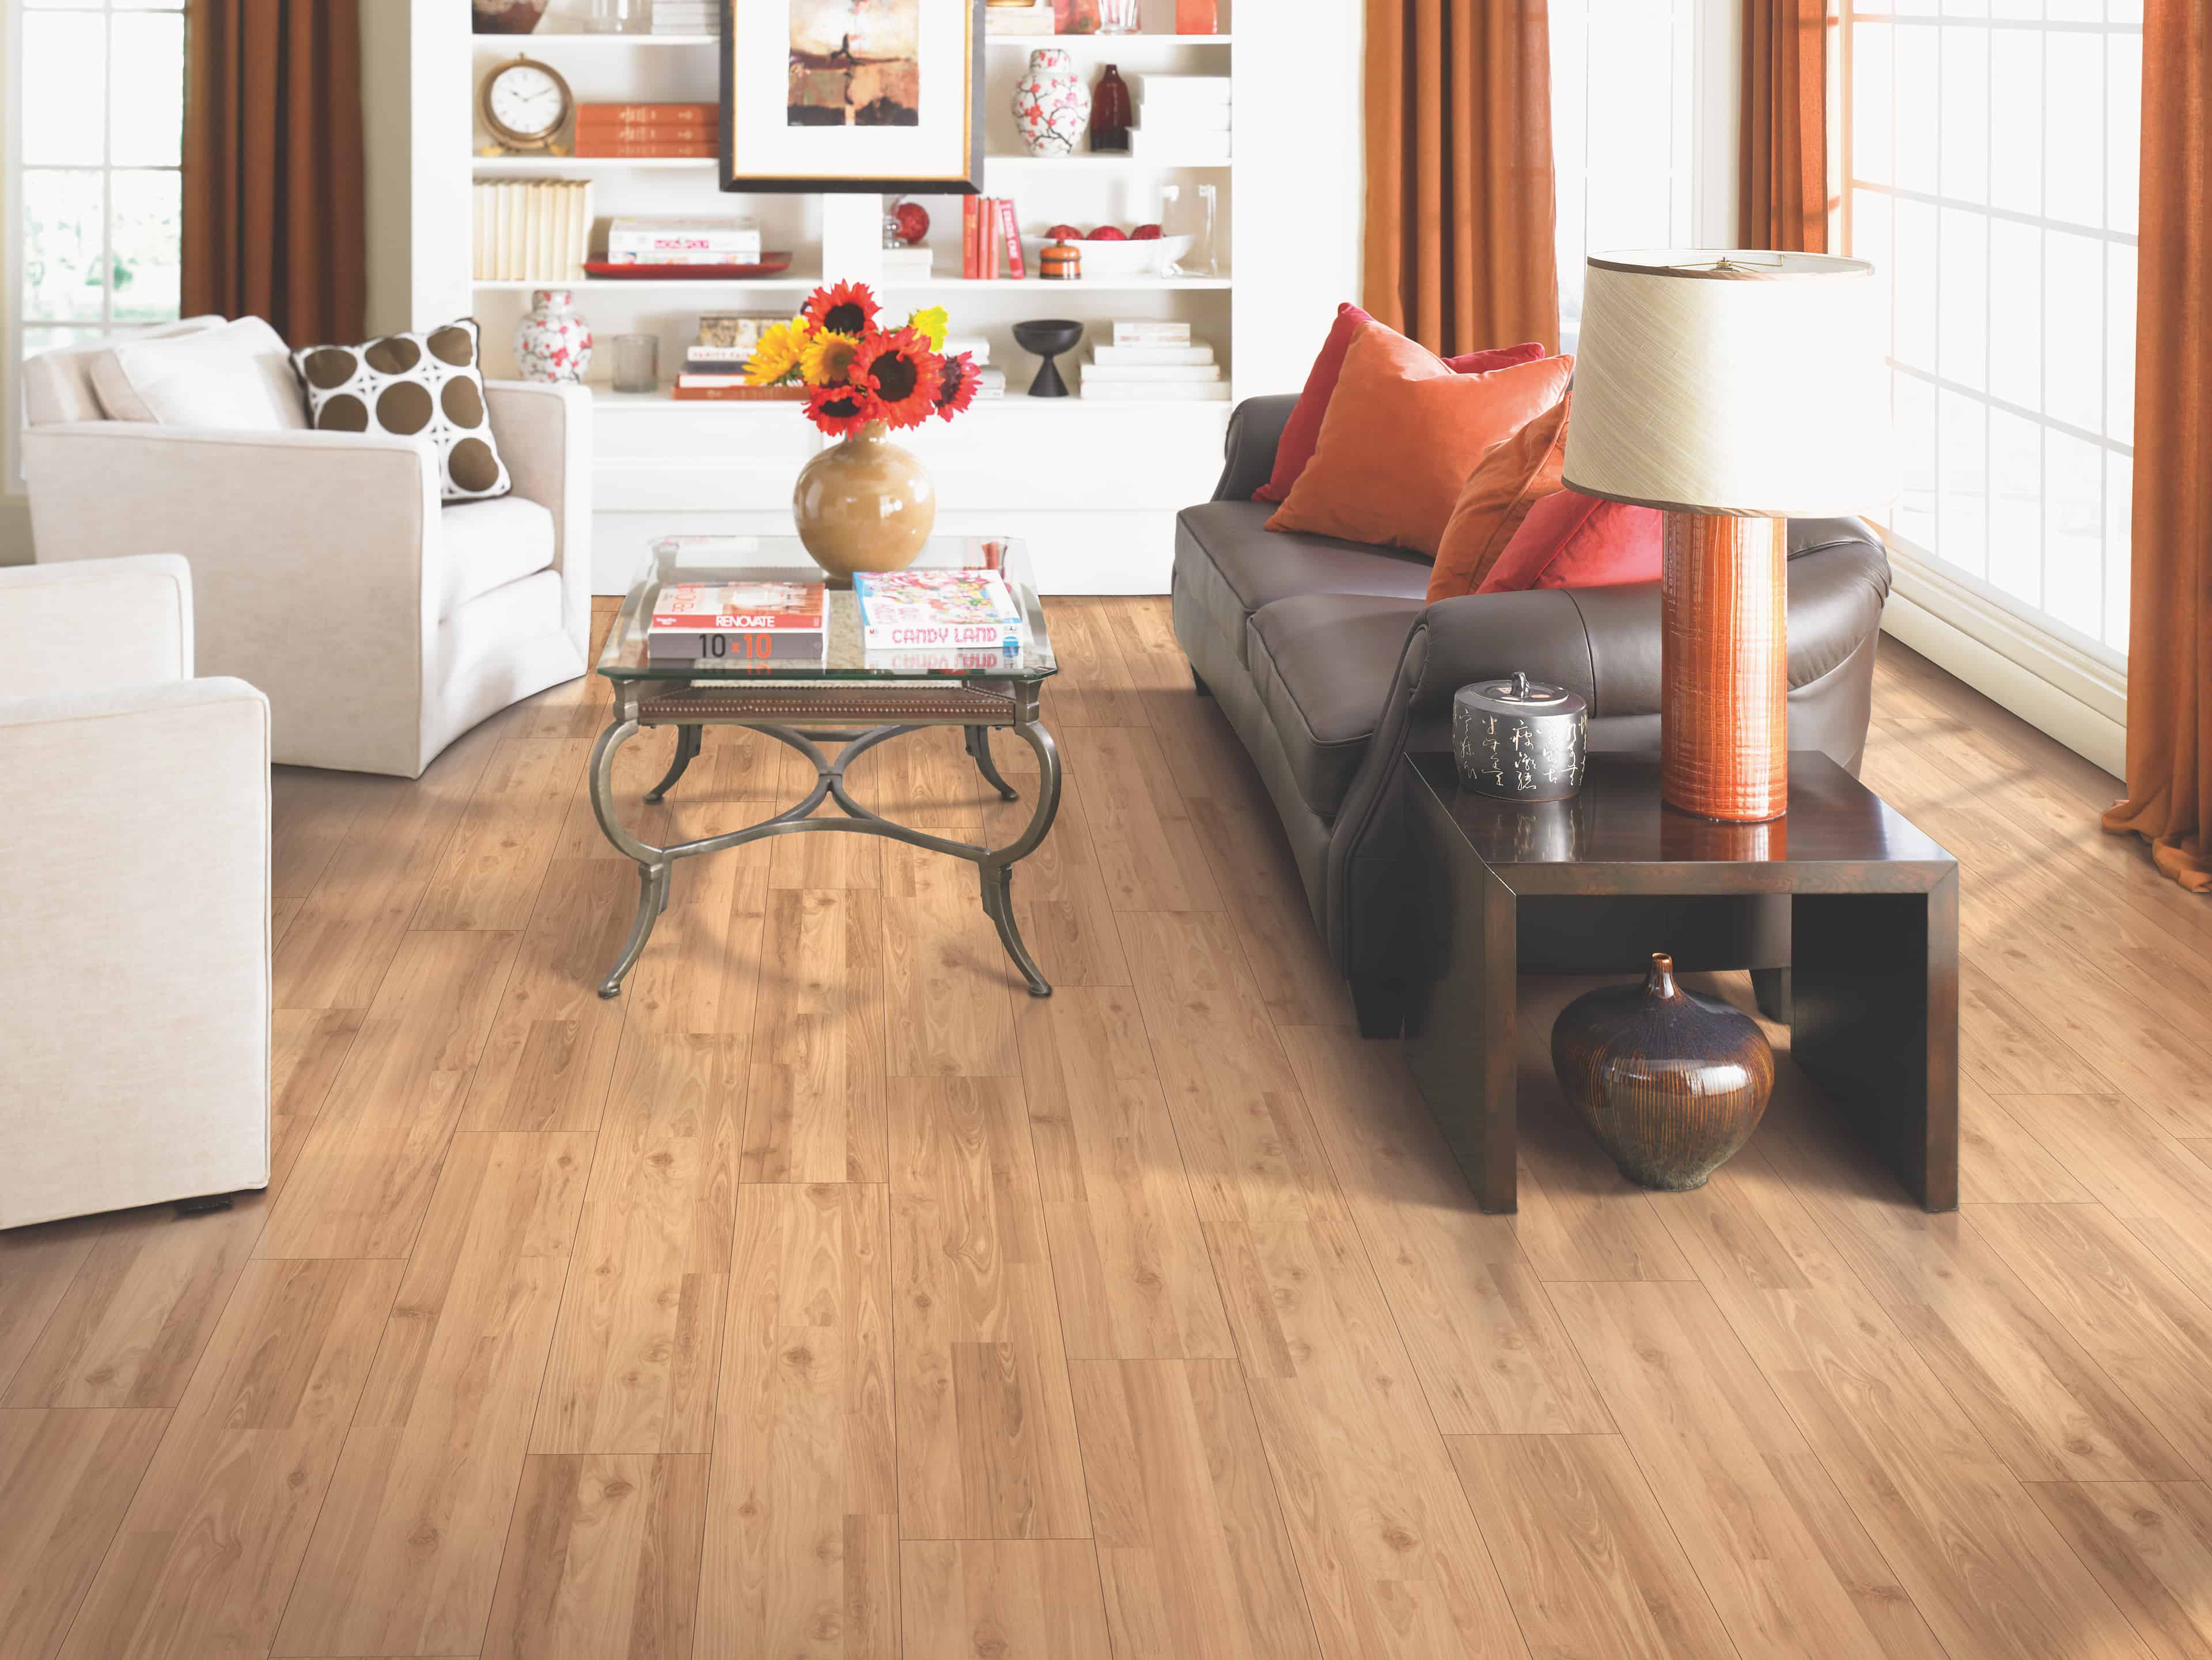 Festivalle Plus - Golden Blonde Oak Flooring in living room